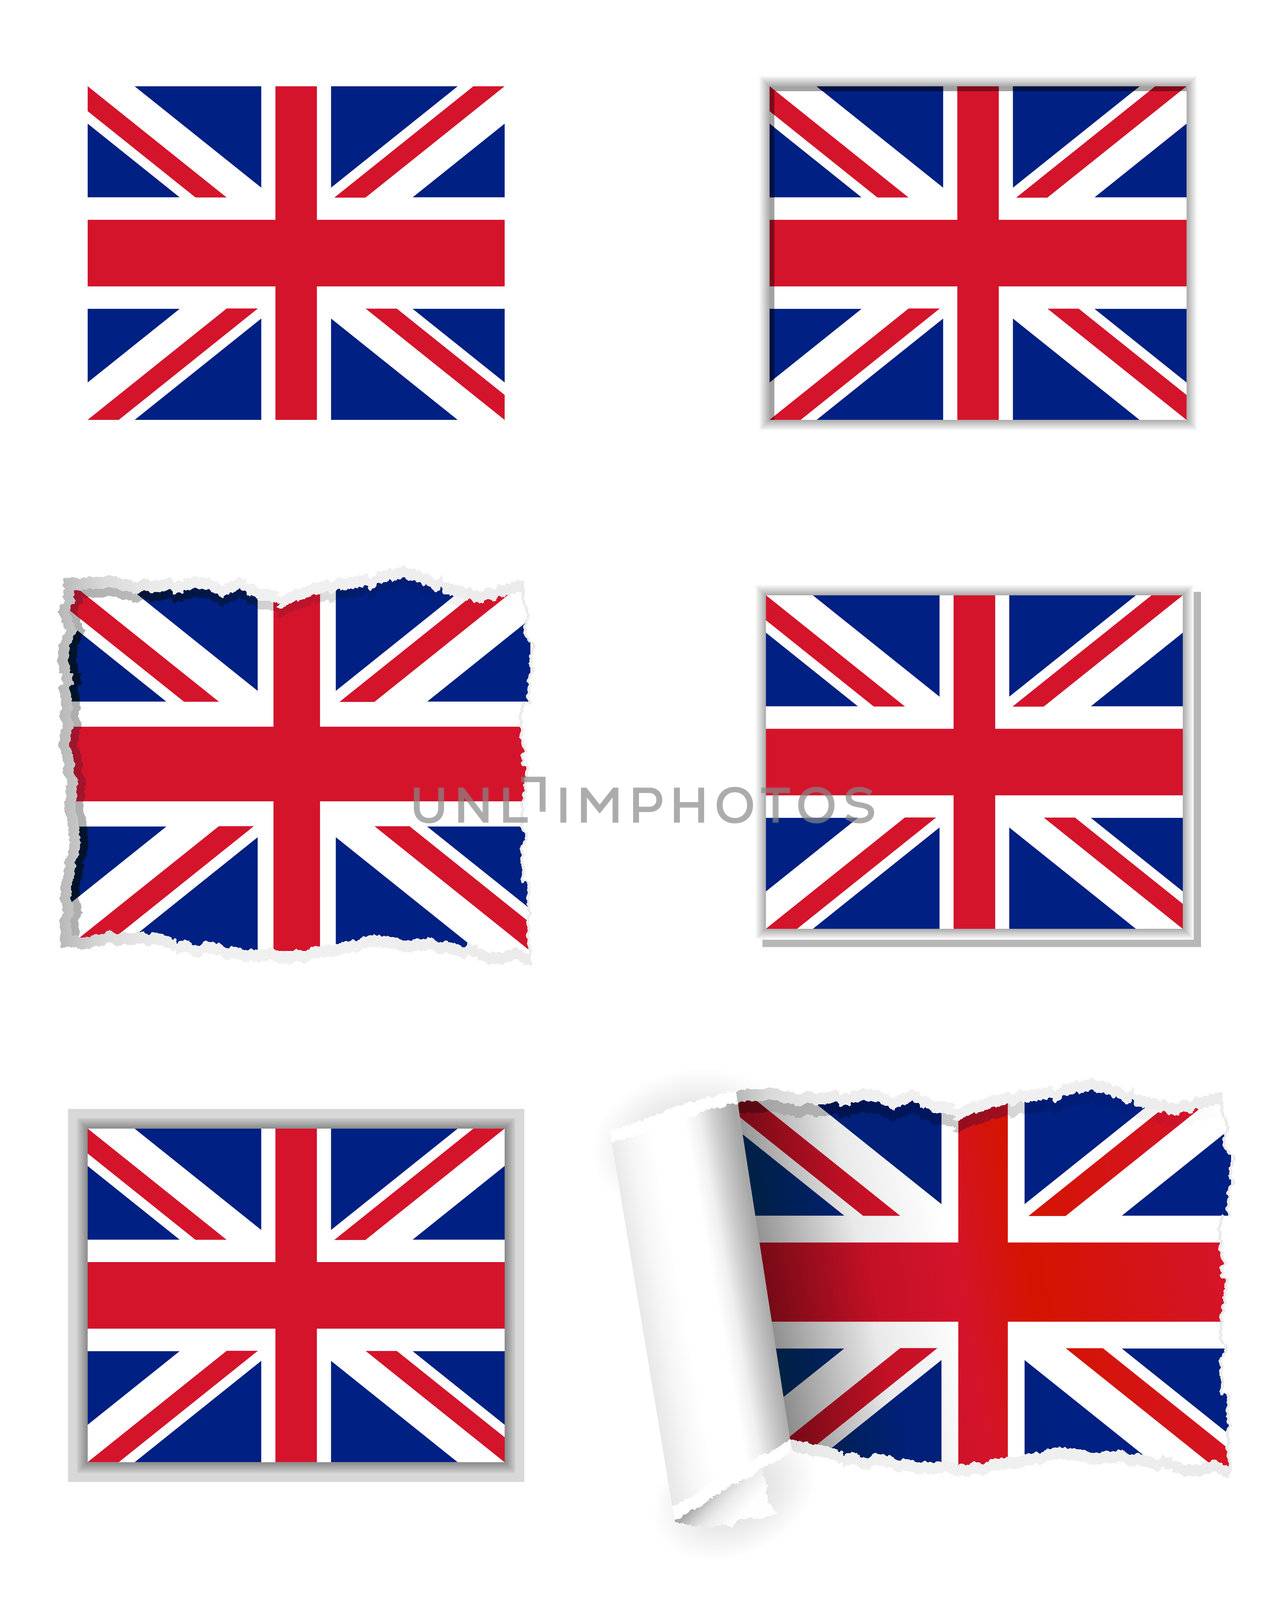 United Kingdom flag set by rbiedermann